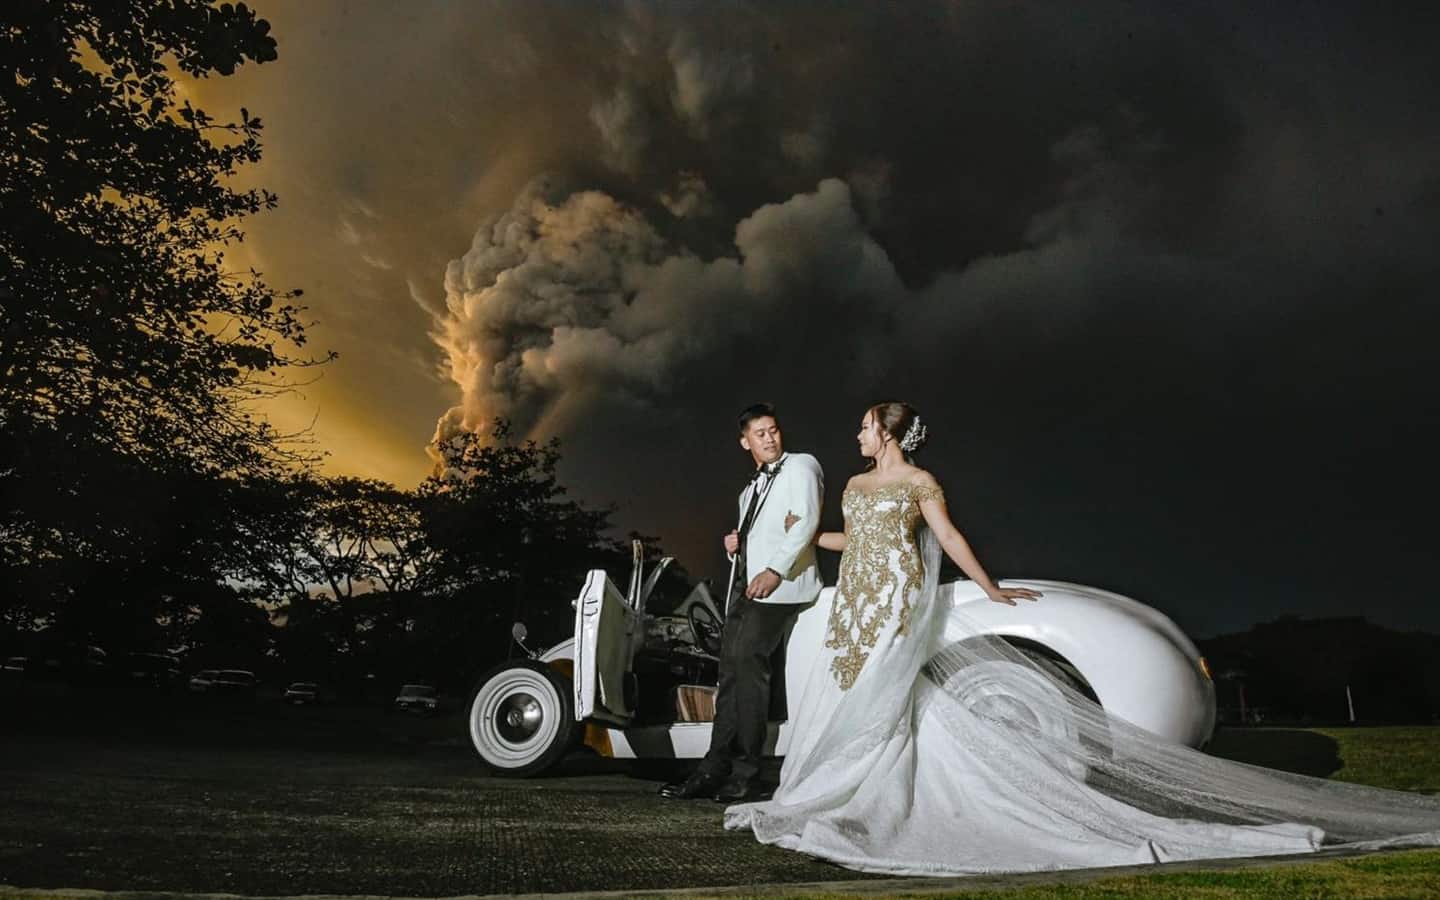 زفاف في ظلال سحابة بركانية عملاقة